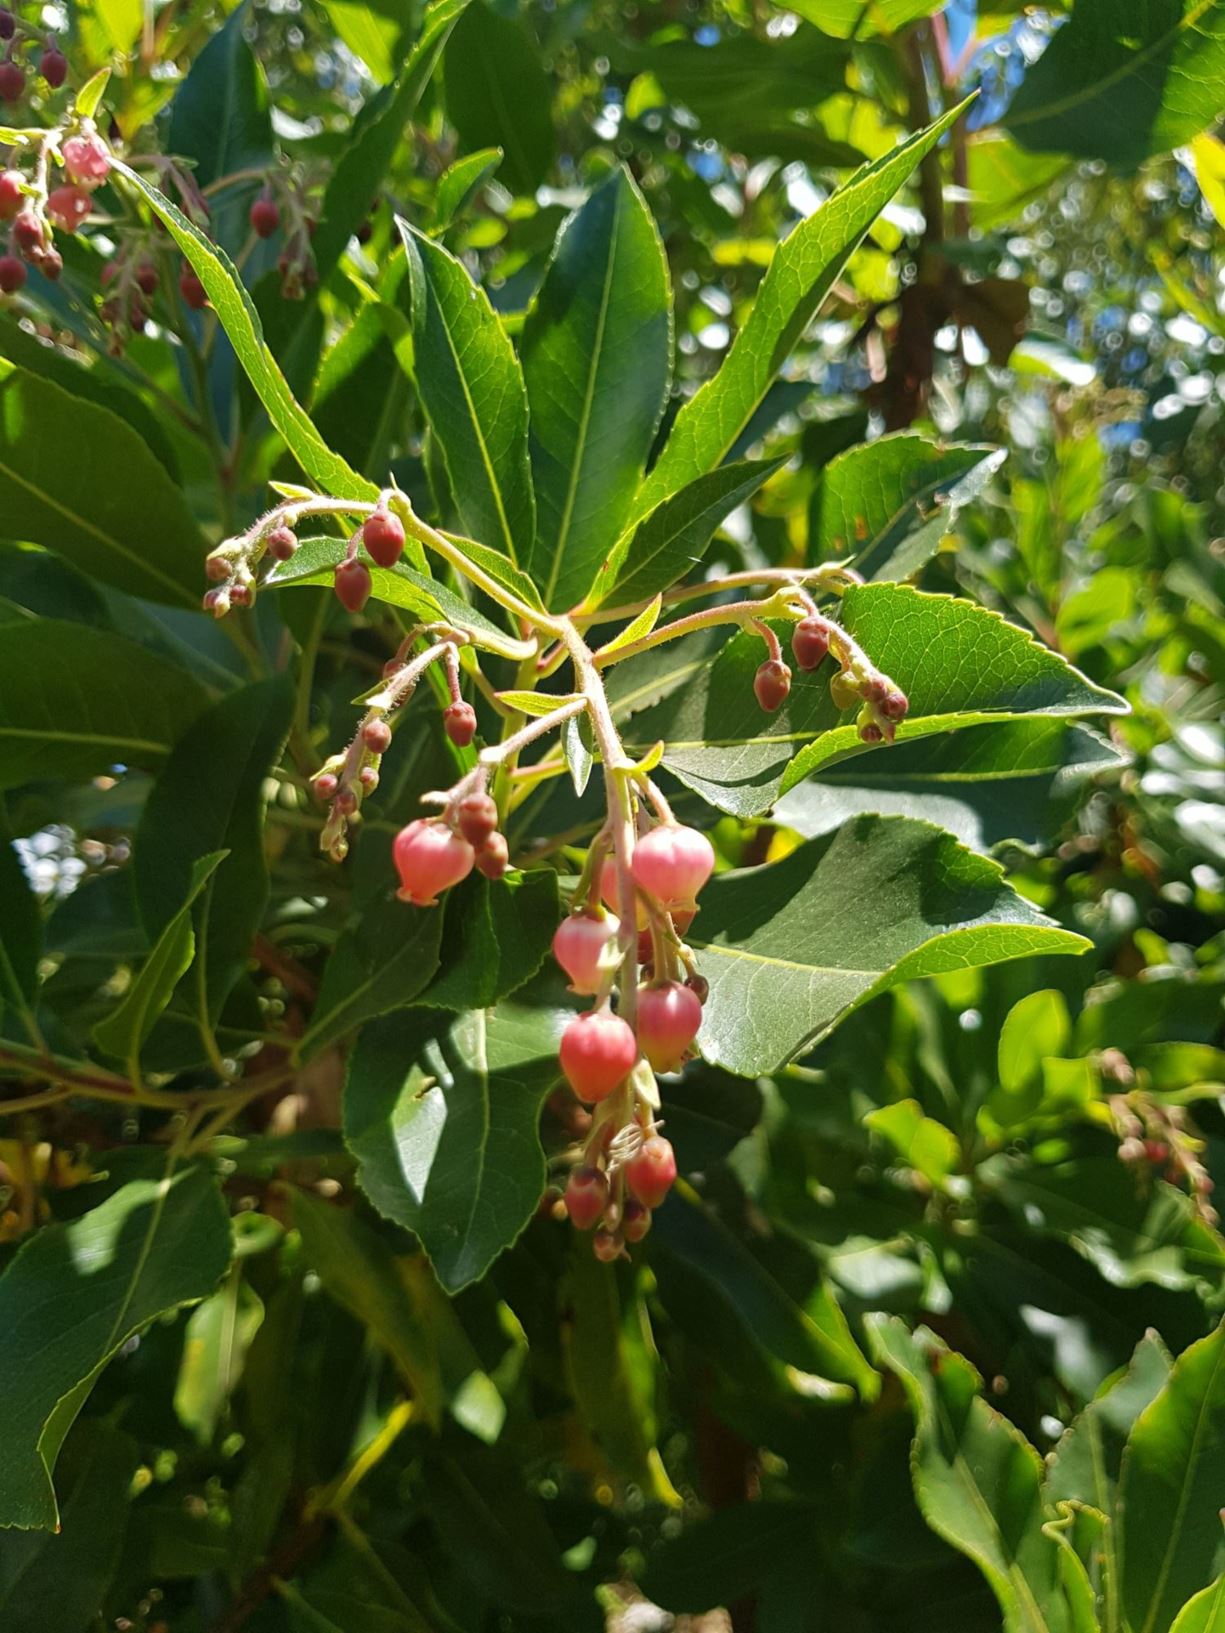 Arbutus unedo - strawberry tree